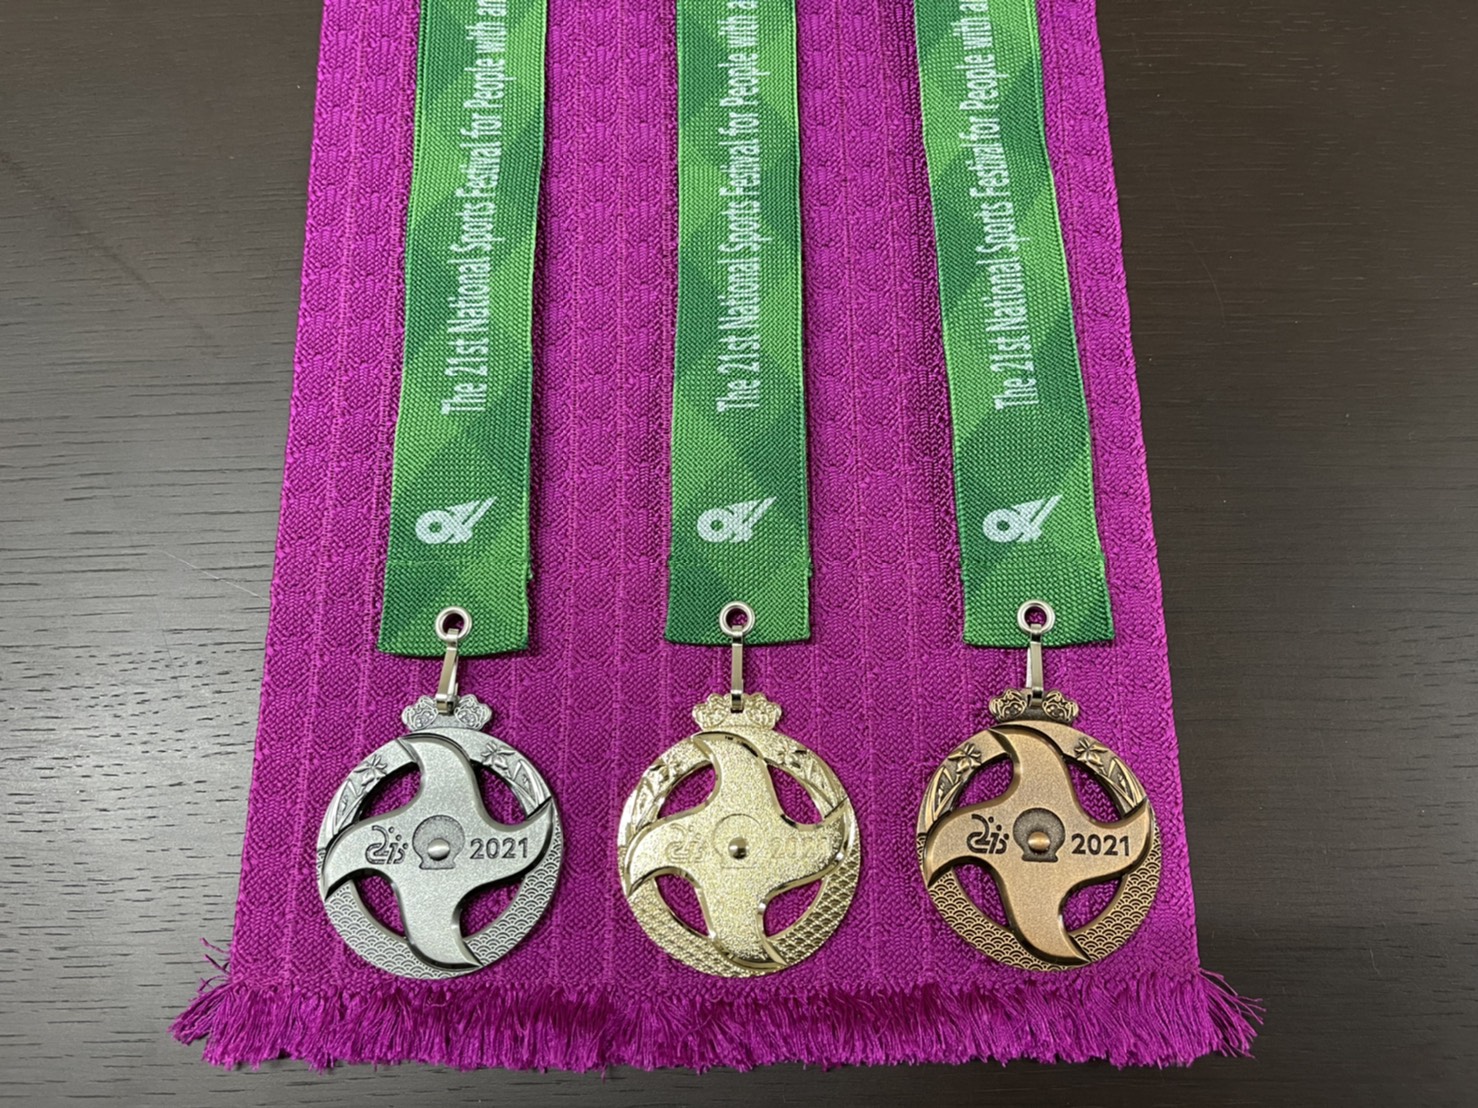 Braided medal (medal tape)